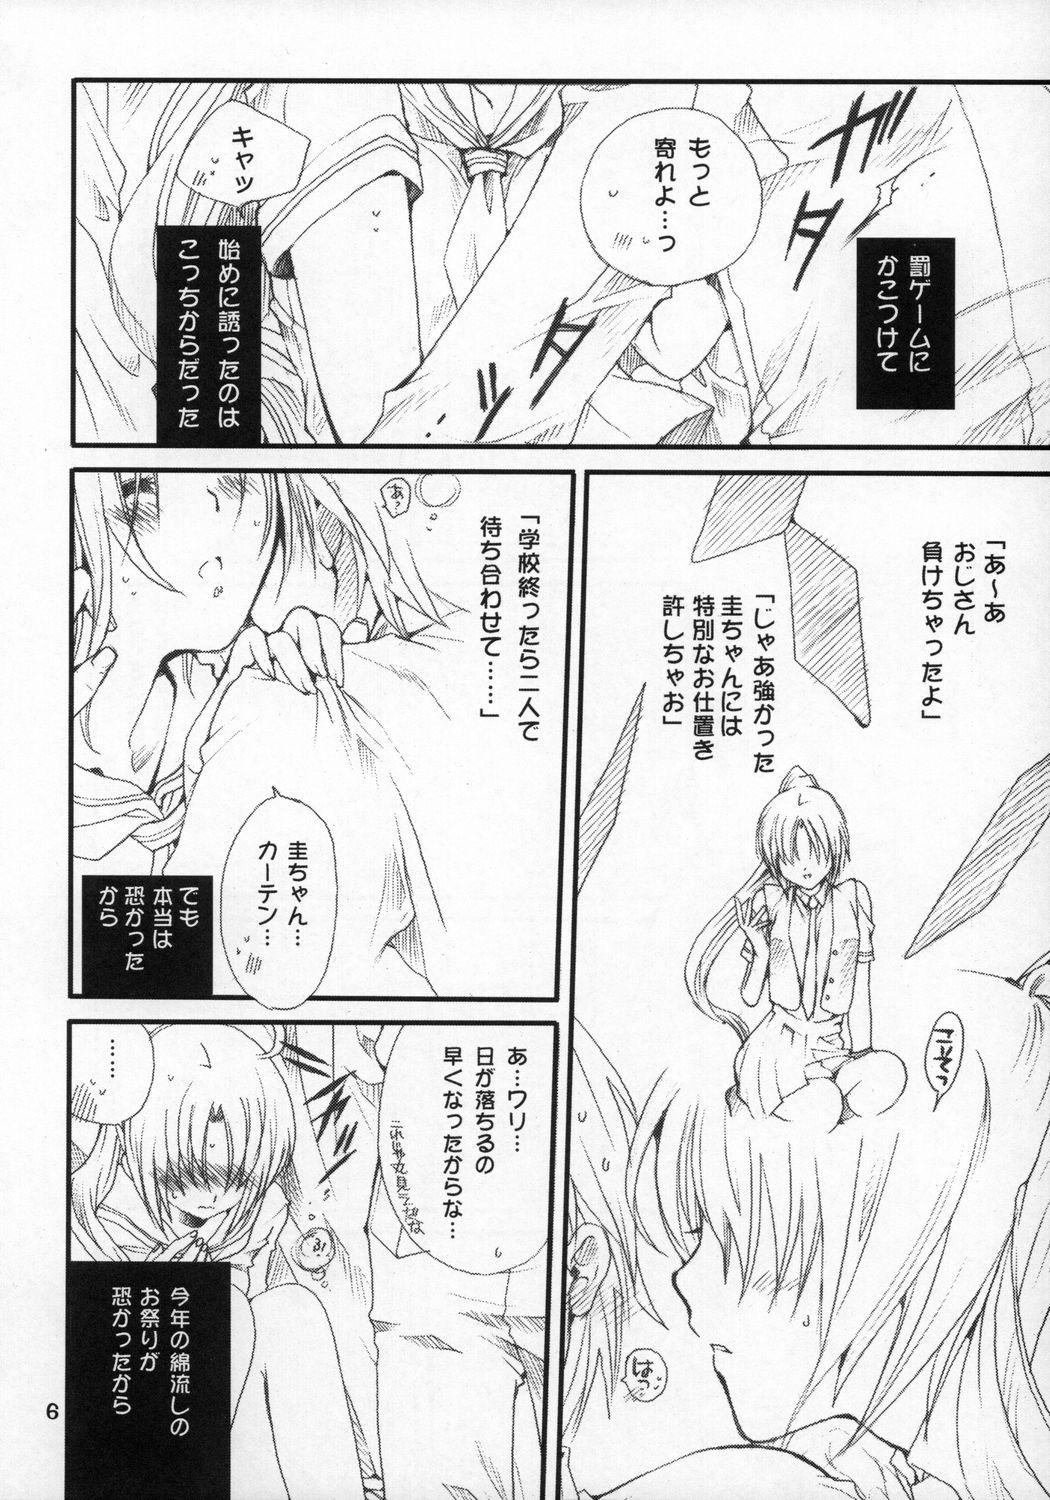 Russian Mion-san Ganbaru! - Higurashi no naku koro ni Teenporno - Page 5